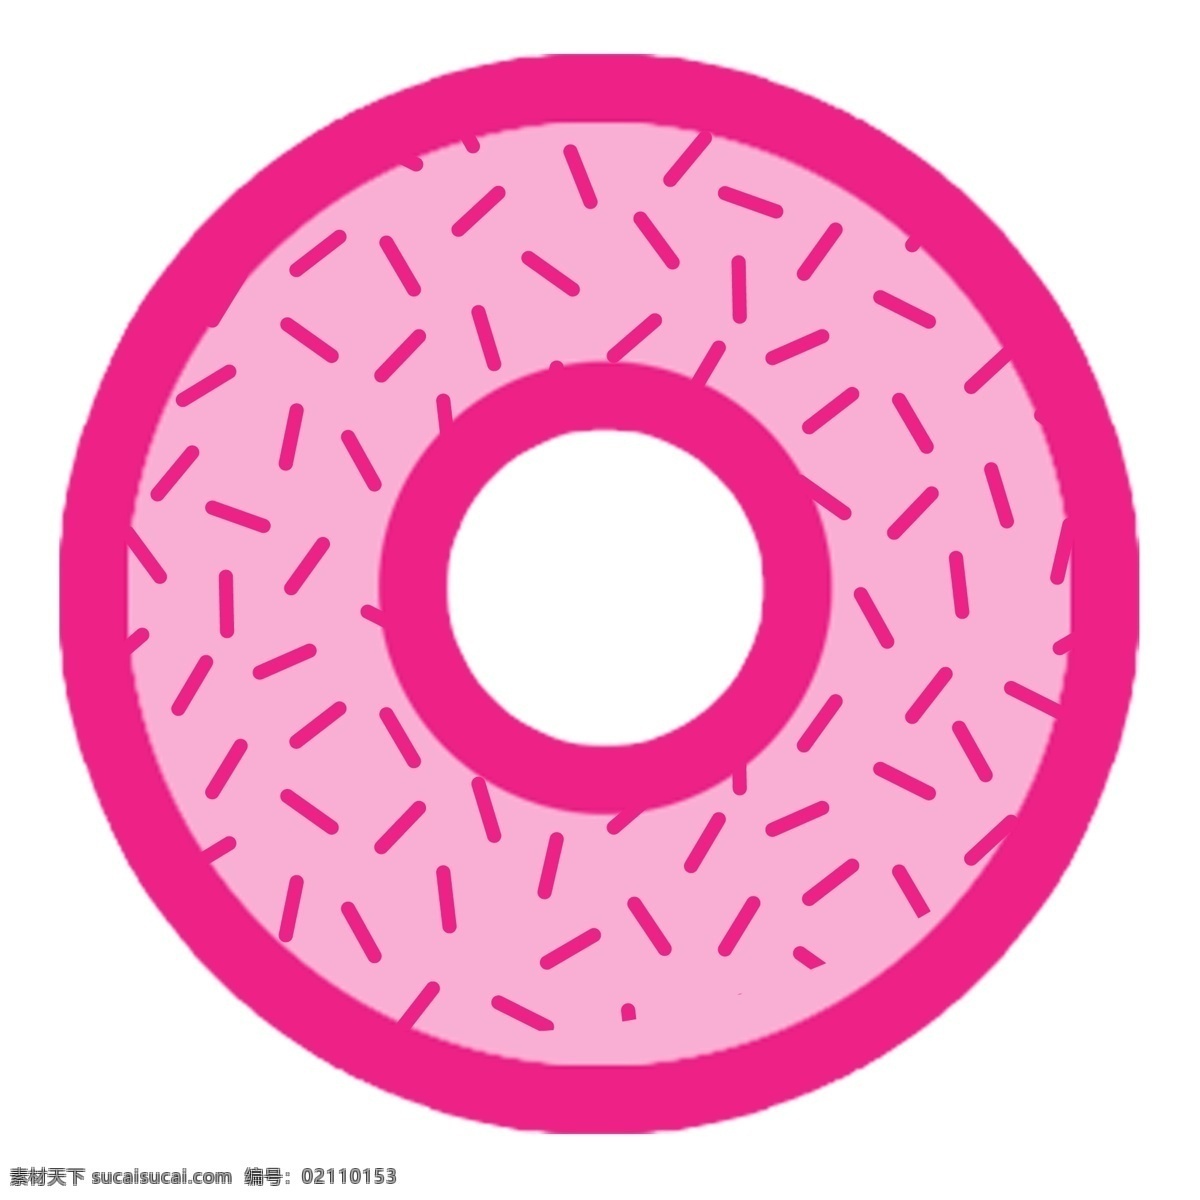 粉红色 甜甜 圈 扁平化 甜甜圈 时尚 装饰素材